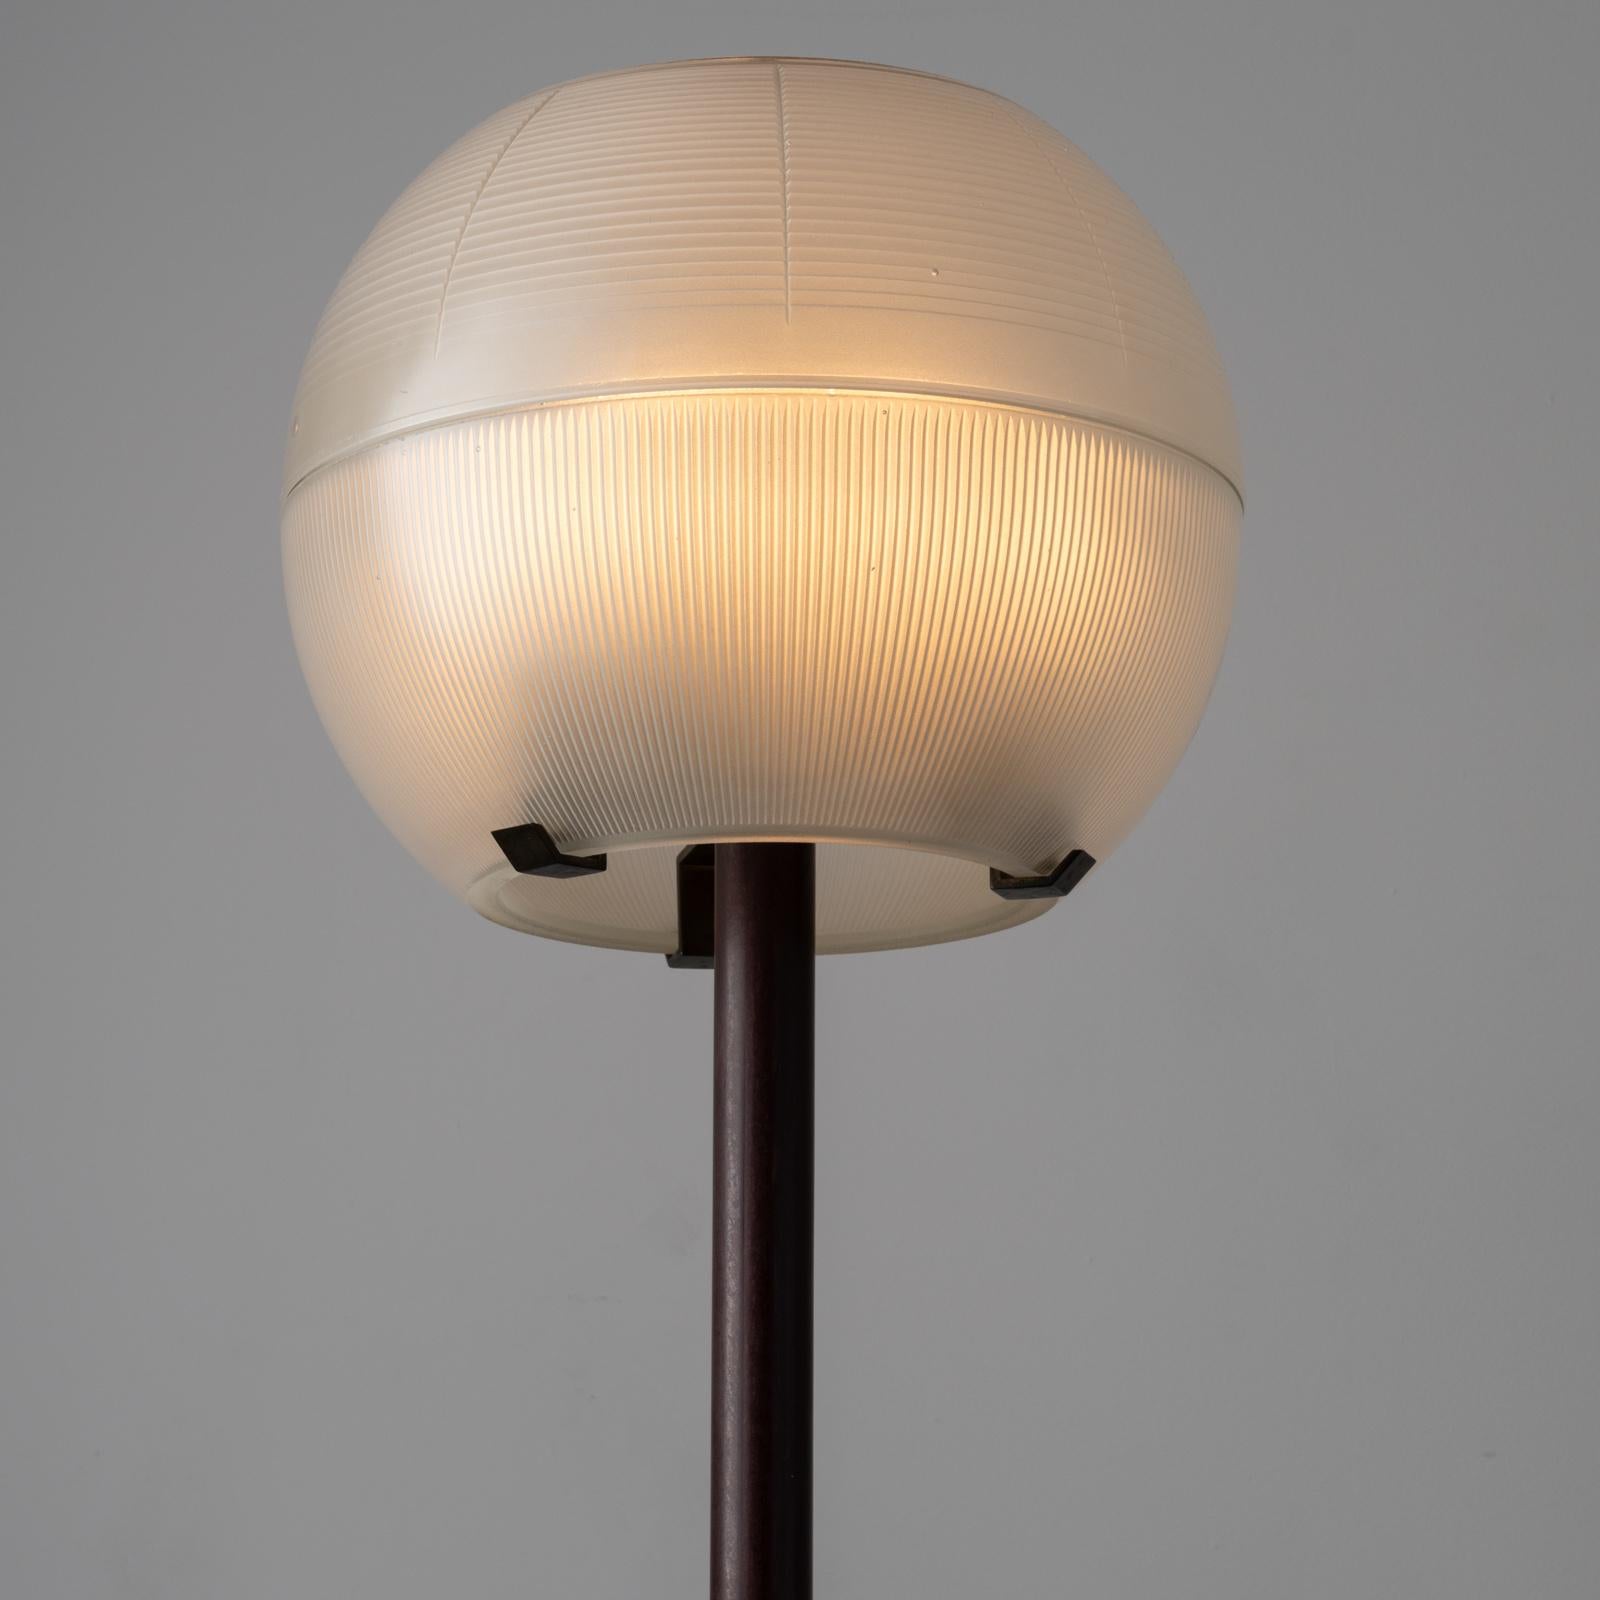 Lampadaire modèle LTE8 d'Ignazio Gardella pour Azucena. Créée et fabriquée en Italie, datant des années 1950 environ. Un double verre holophane demi-sphérique constitue le sommet de cette lampe. La tige en bois est teintée en cerisier foncé. La